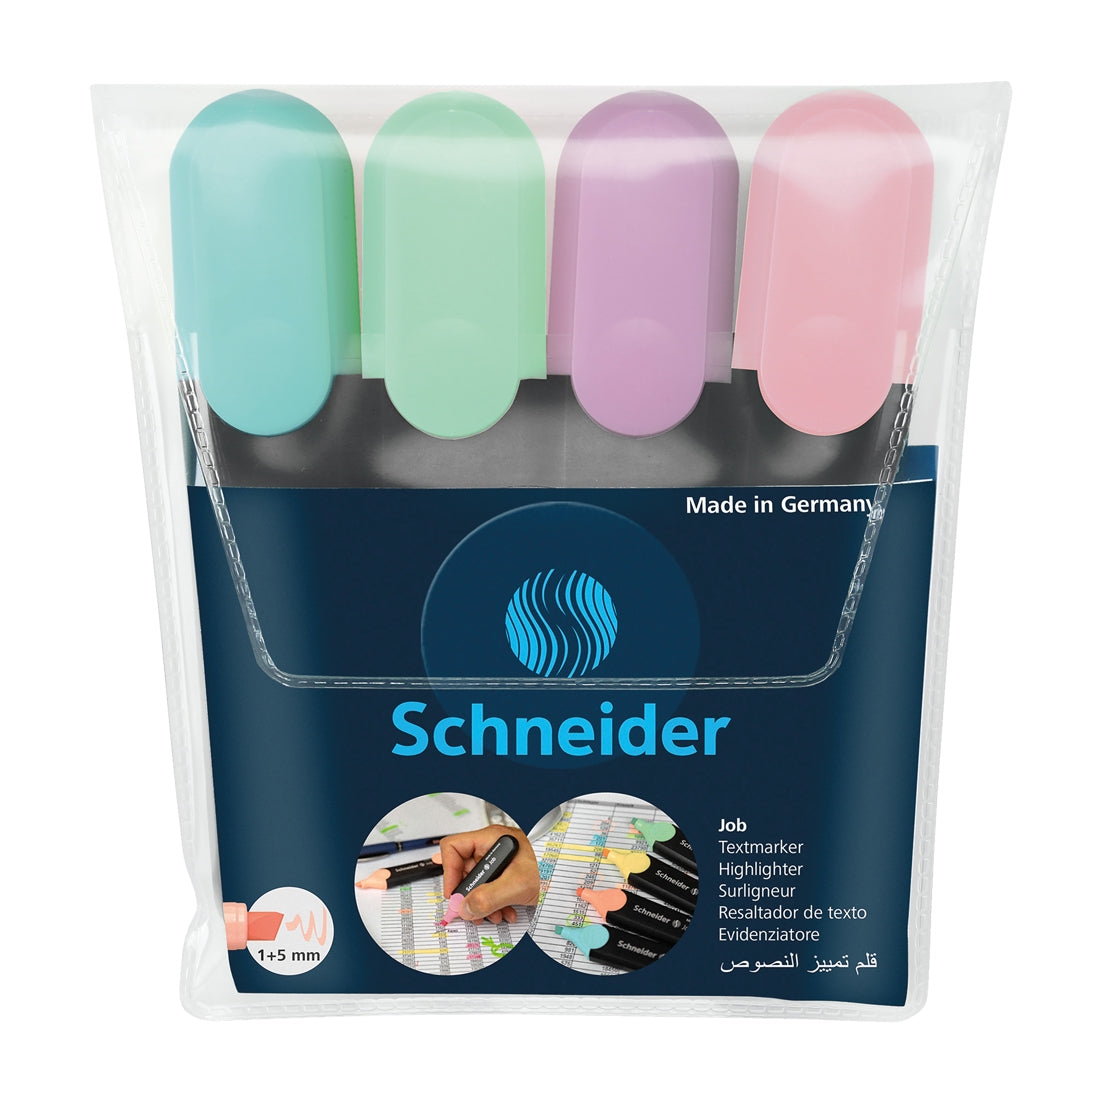 Schneider Pens